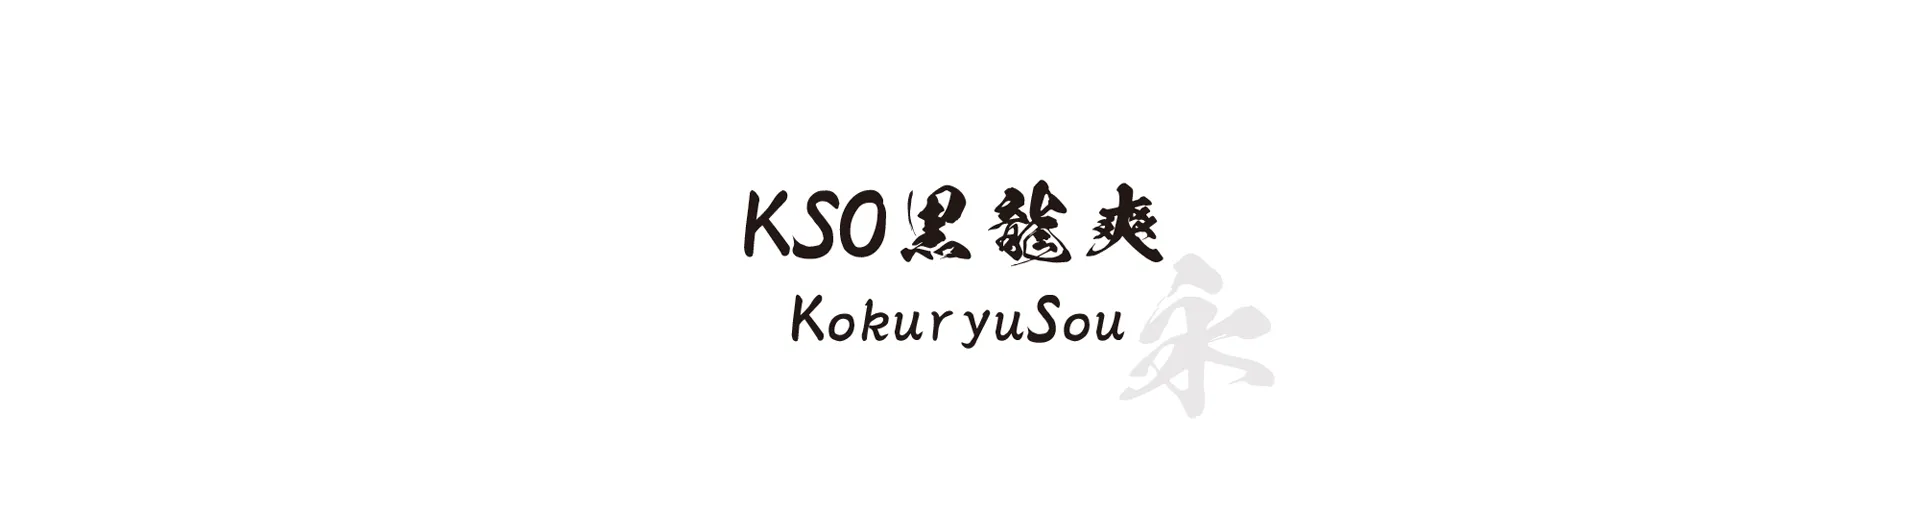 KokuryuSou